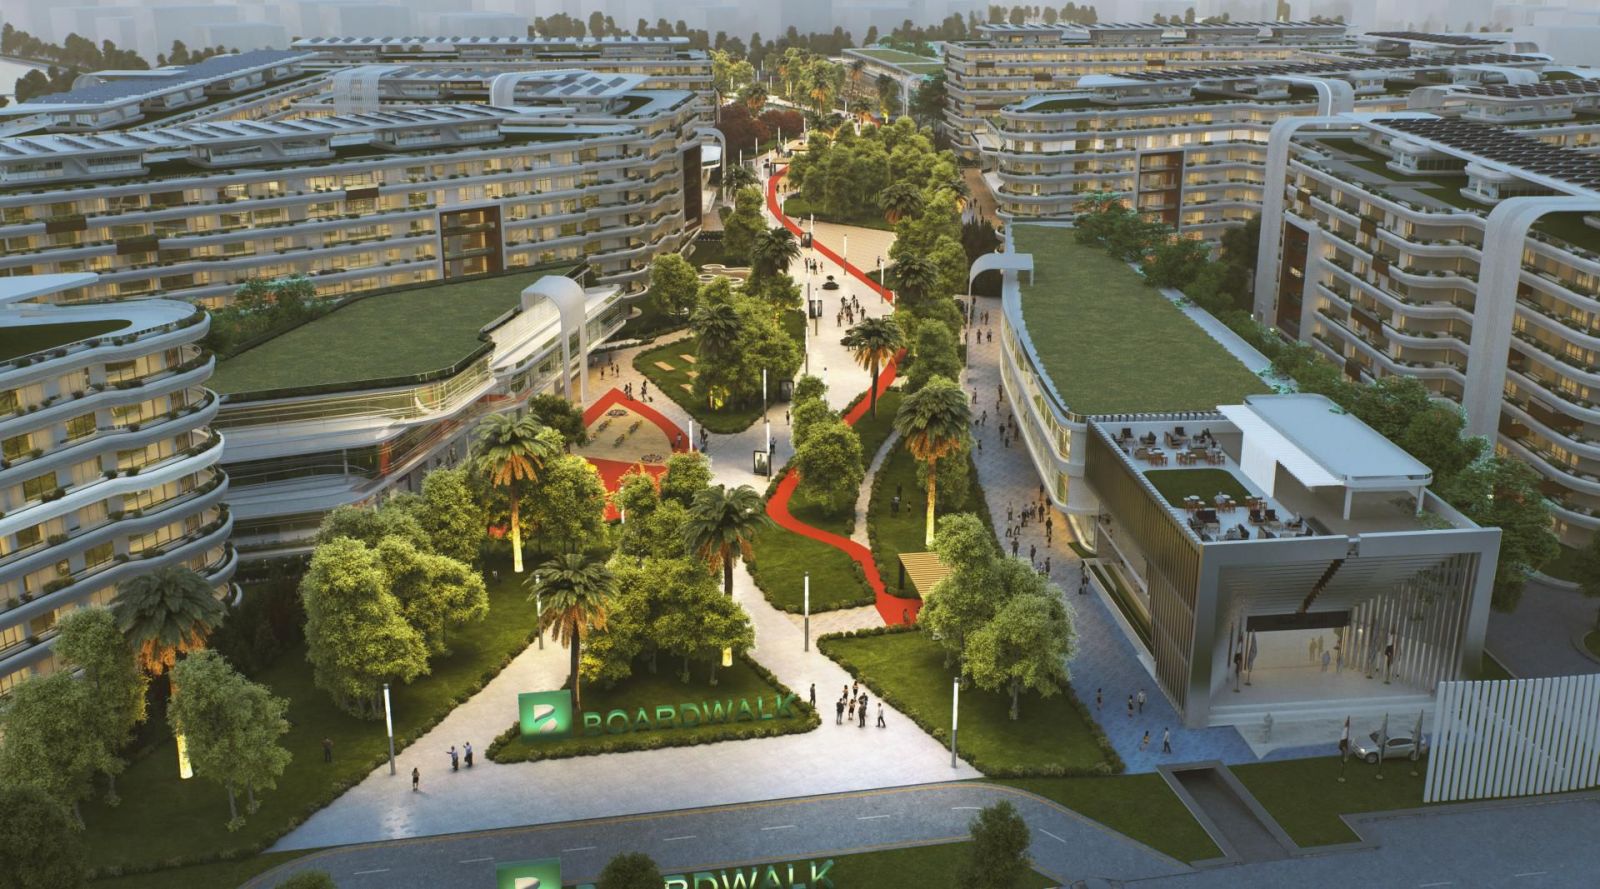 كمبوند بوردووك العاصمة الإدارية الجديدة العصرية – Boardwalk New Capital